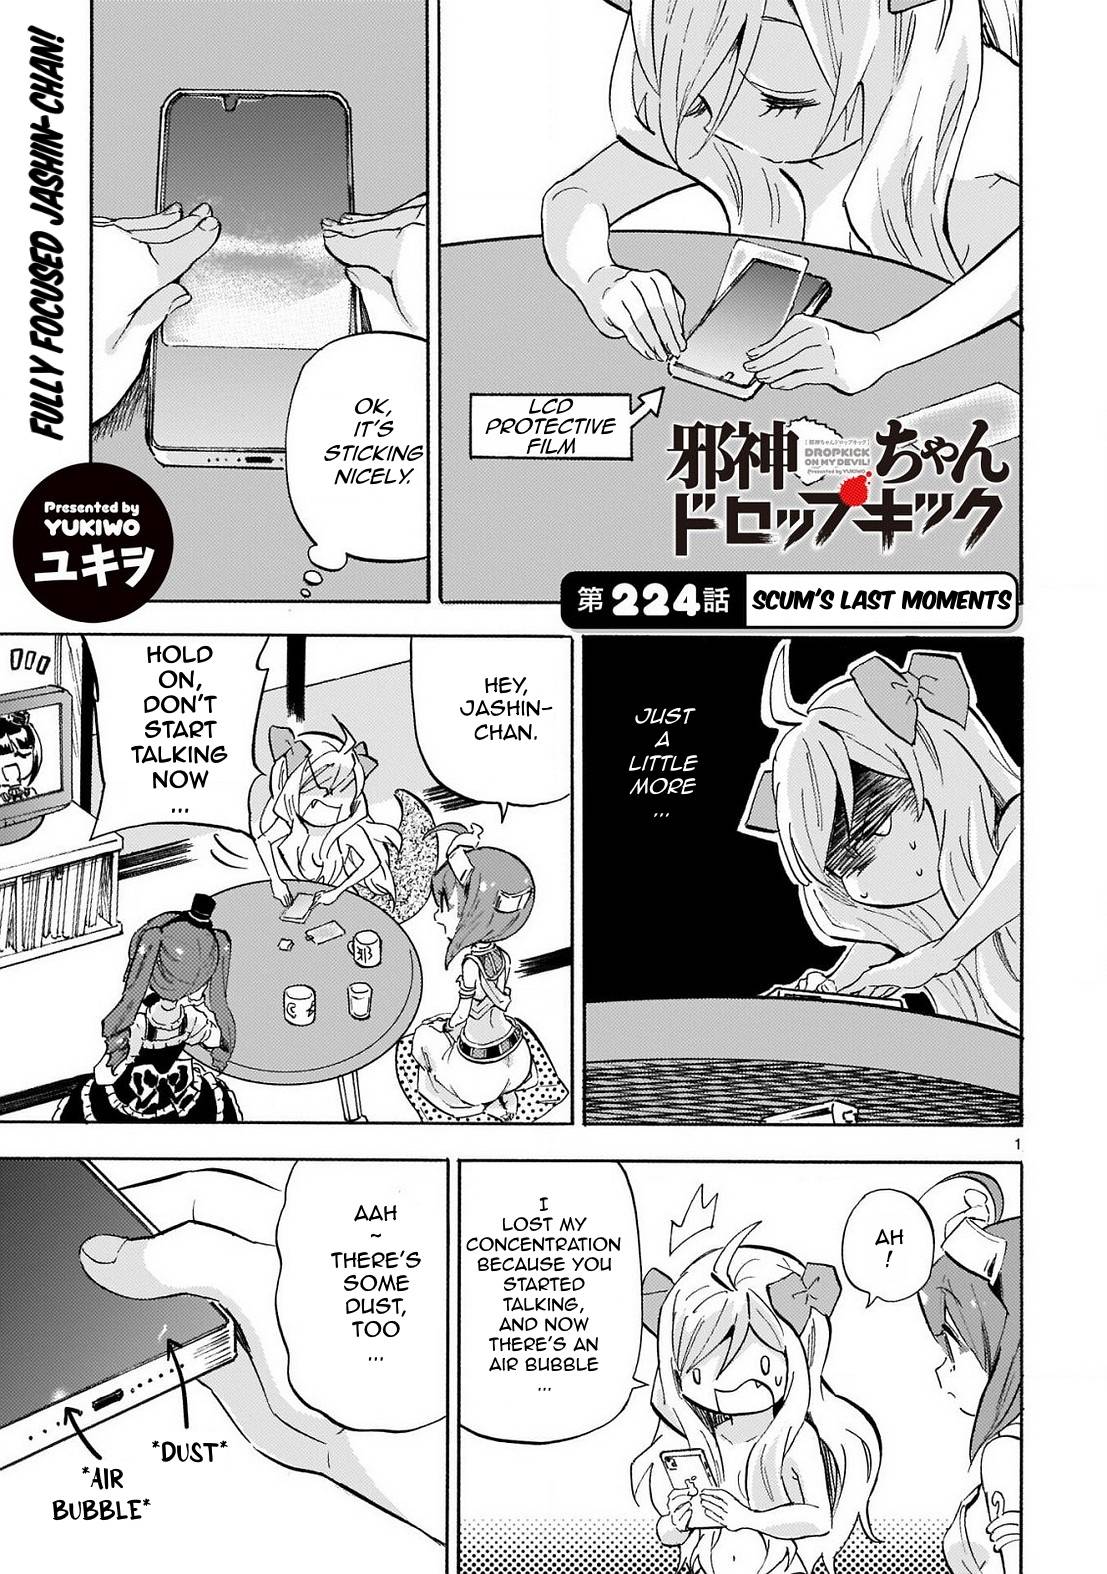 Jashin-chan Dropkick chapter 229 page 1